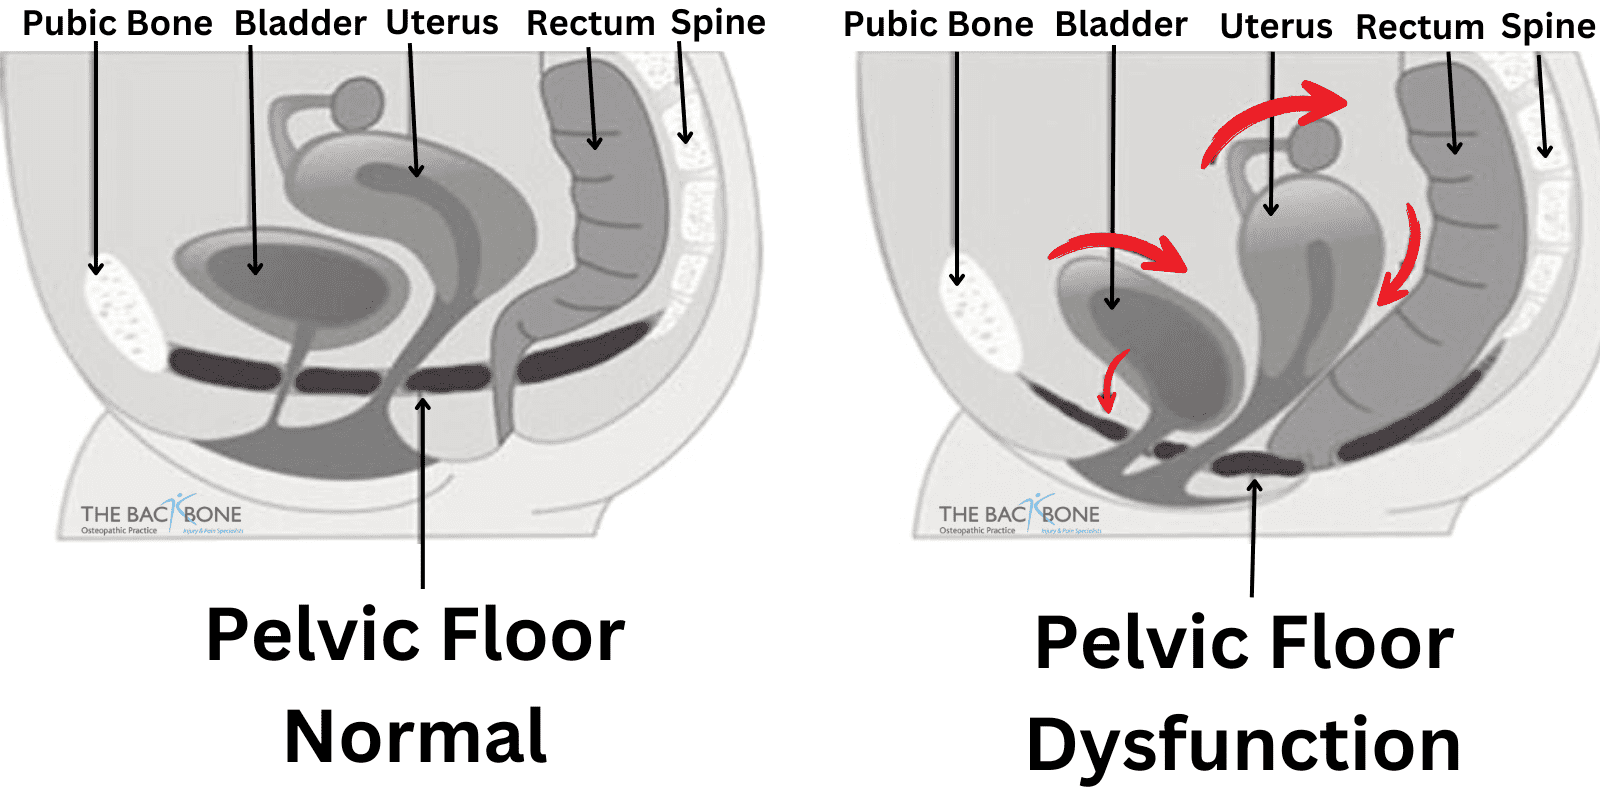 Pelvic Floor Dysfunction/Prolapse